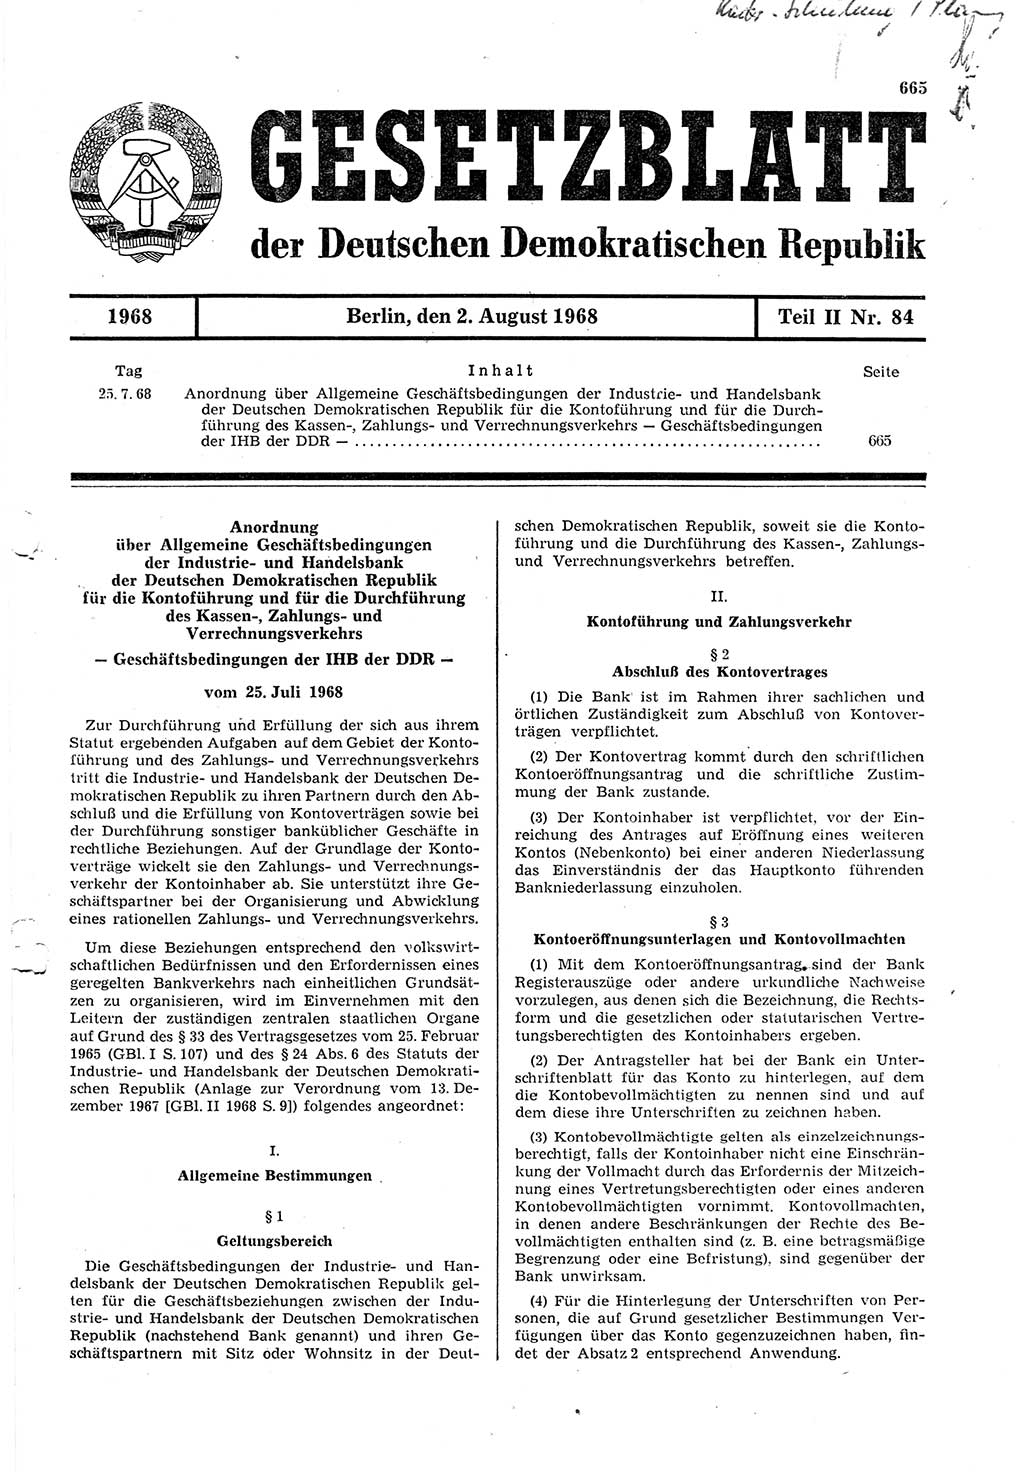 Gesetzblatt (GBl.) der Deutschen Demokratischen Republik (DDR) Teil ⅠⅠ 1968, Seite 665 (GBl. DDR ⅠⅠ 1968, S. 665)